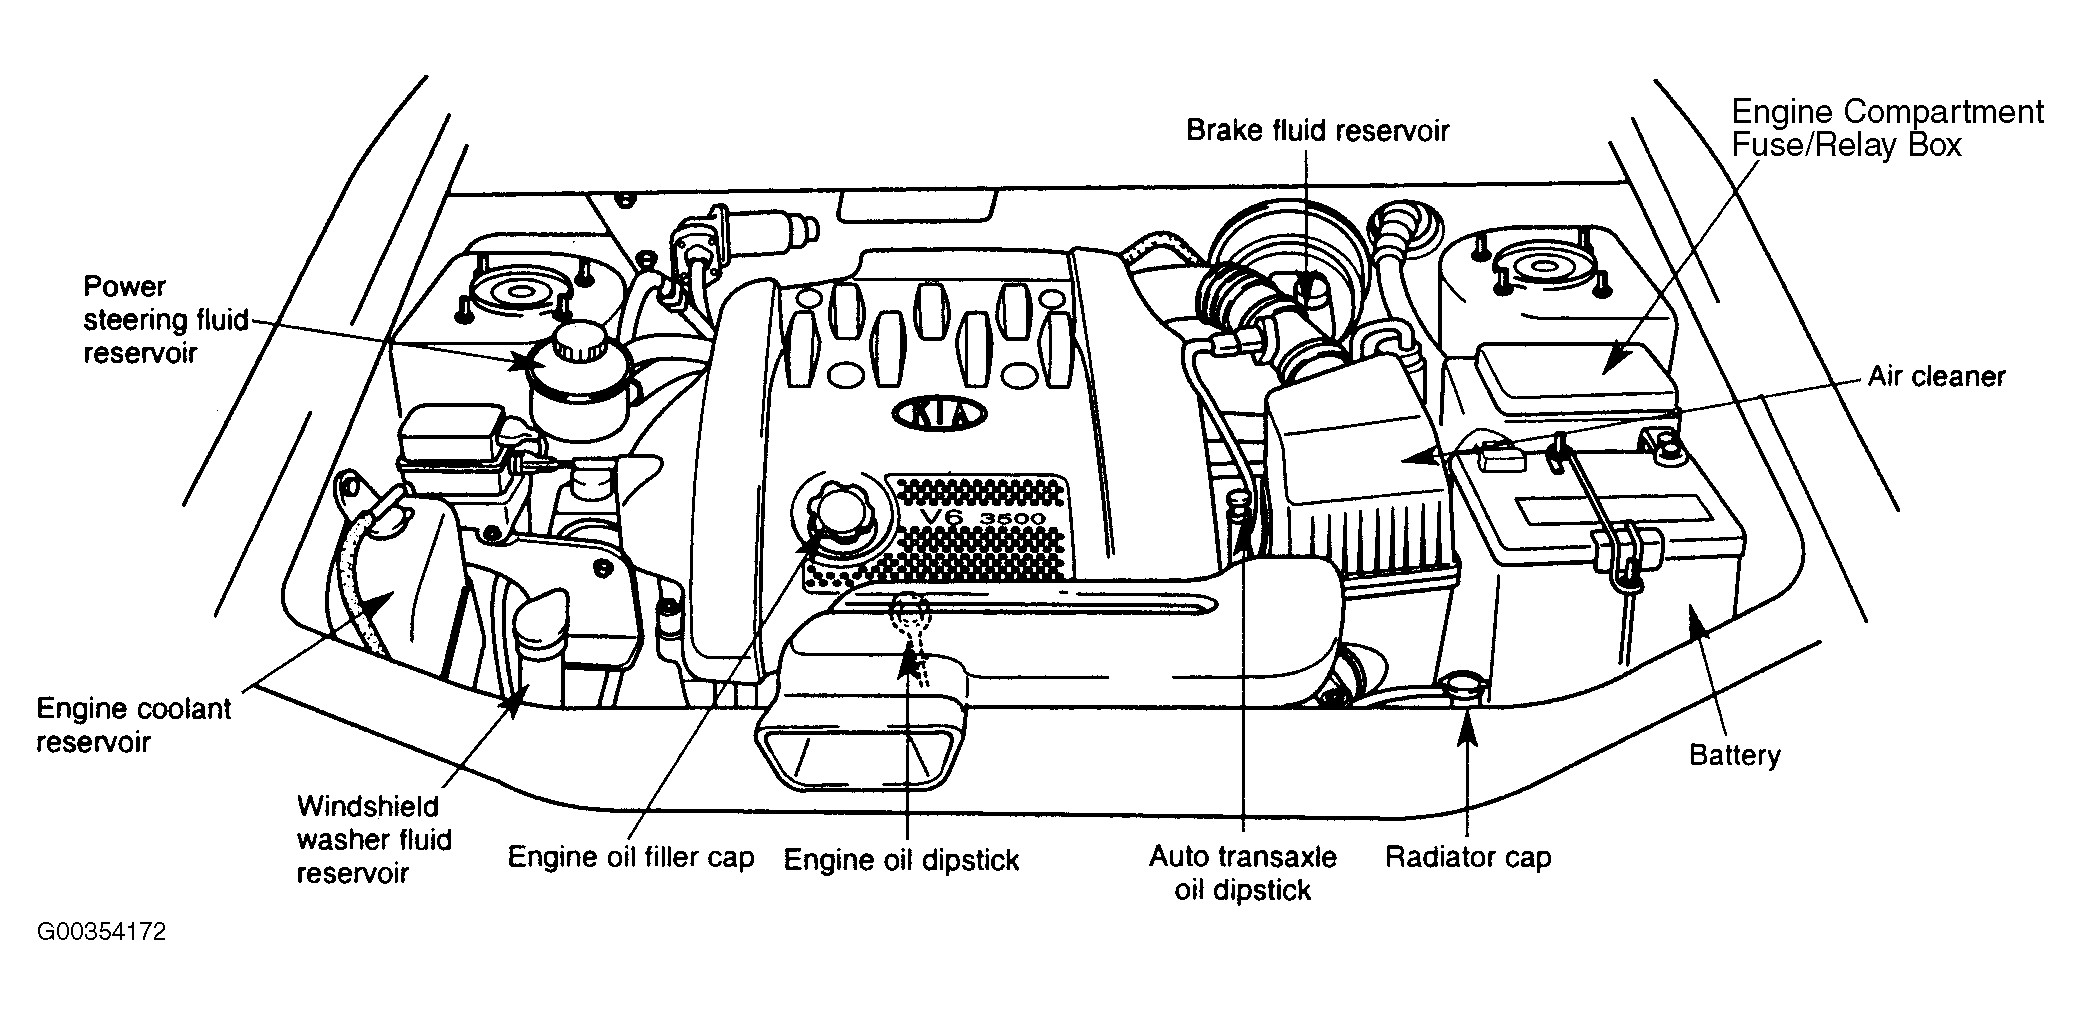 2004 Kia Amanti Engine Diagram Kia Amanti Problems Stunning Fuse Box Wiring Kia Spectra Main Fuse Of 2004 Kia Amanti Engine Diagram